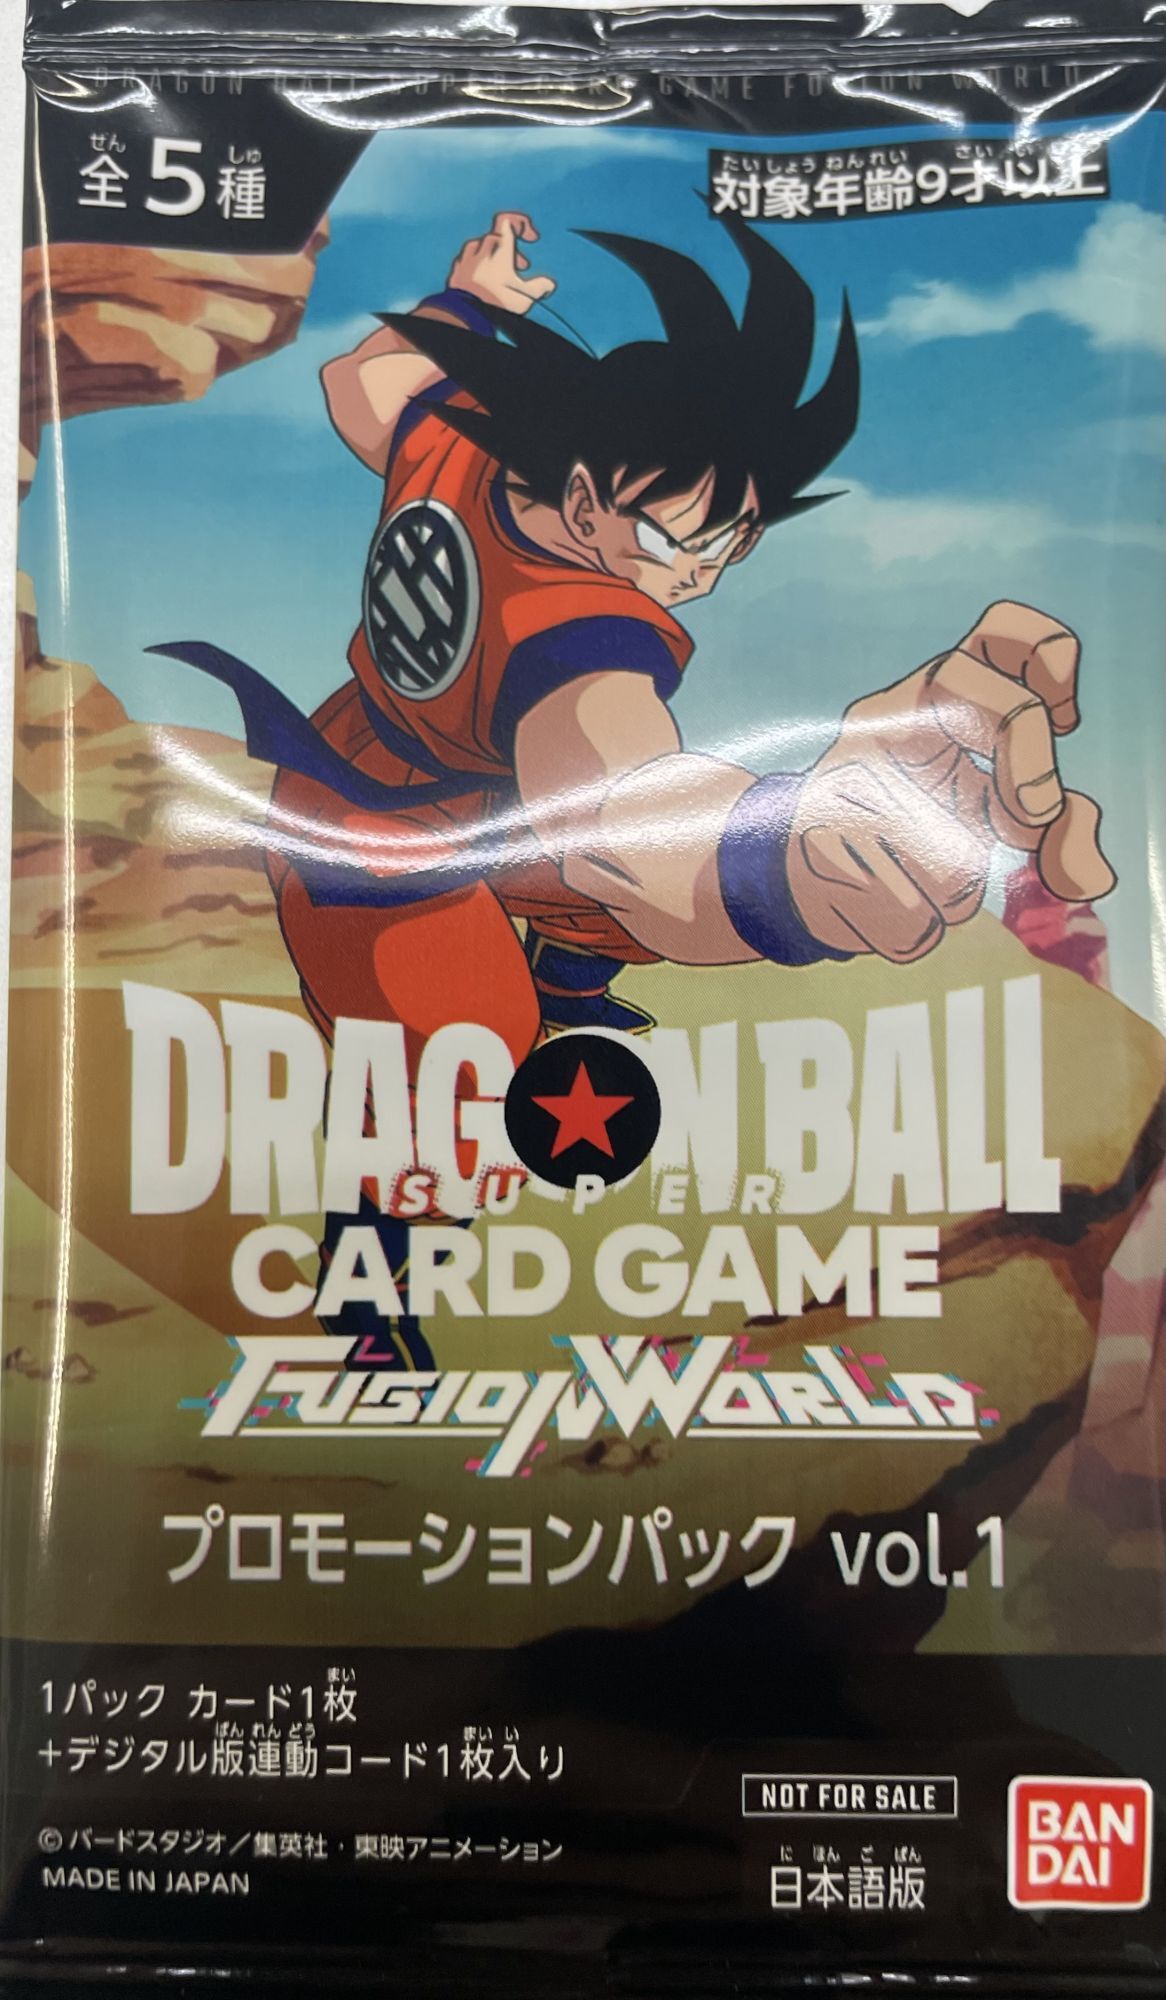 ドラゴンボール プロモーションパック vol.1 フュージョンワールド